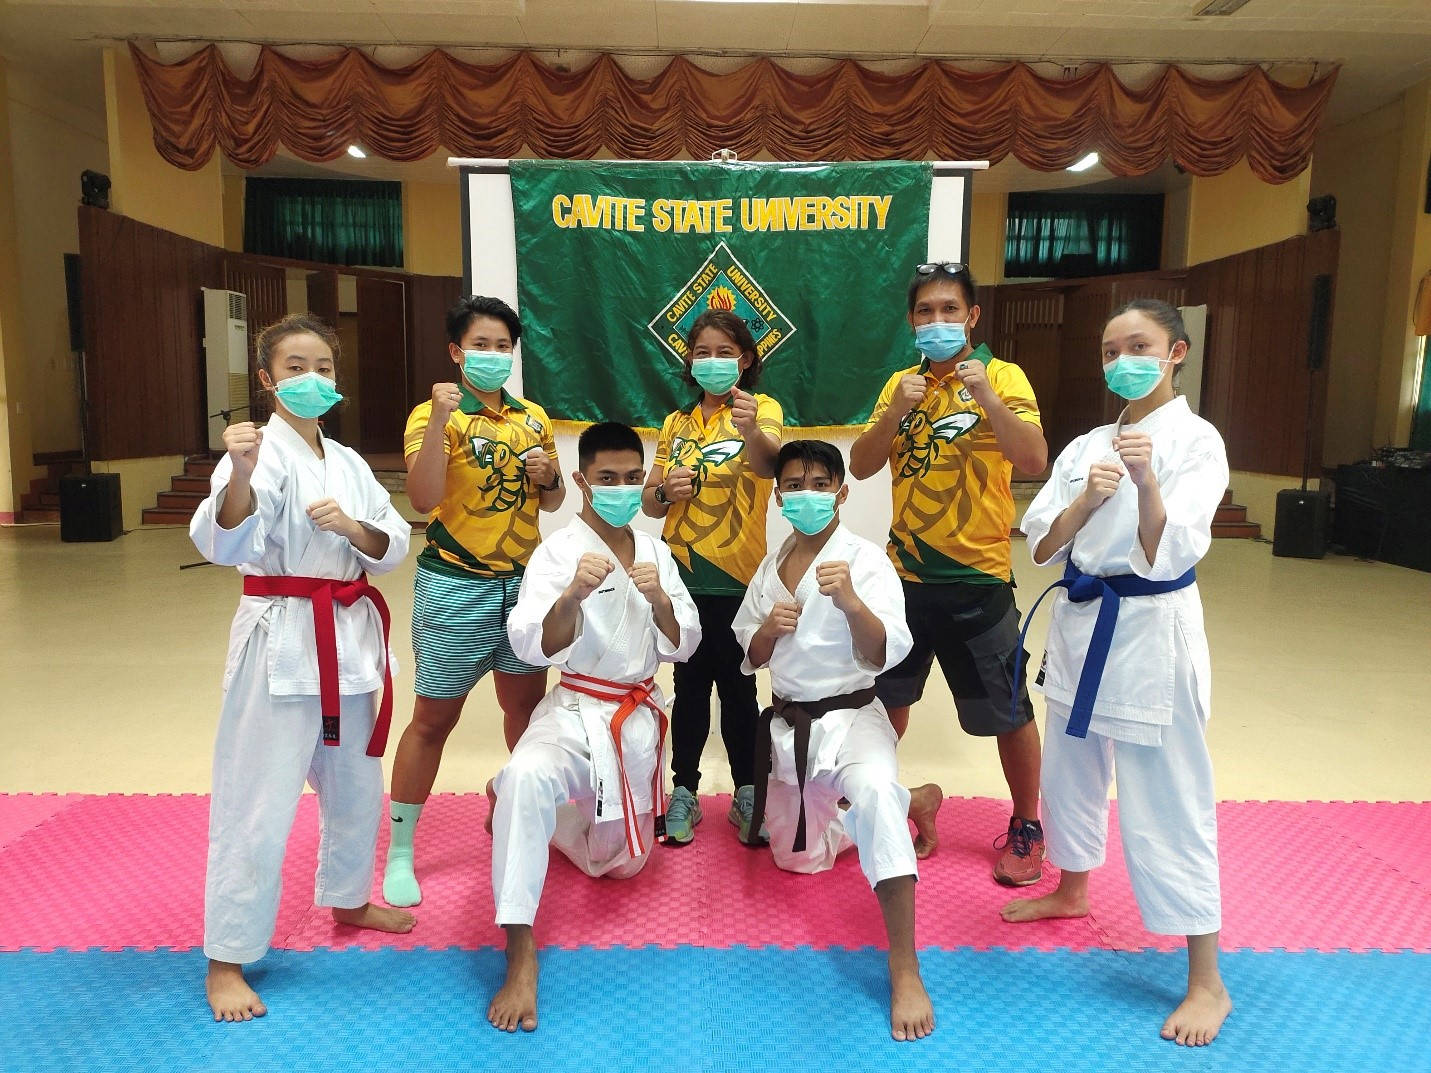 Karateschüler In Masken Der Cavite State University Wallpaper